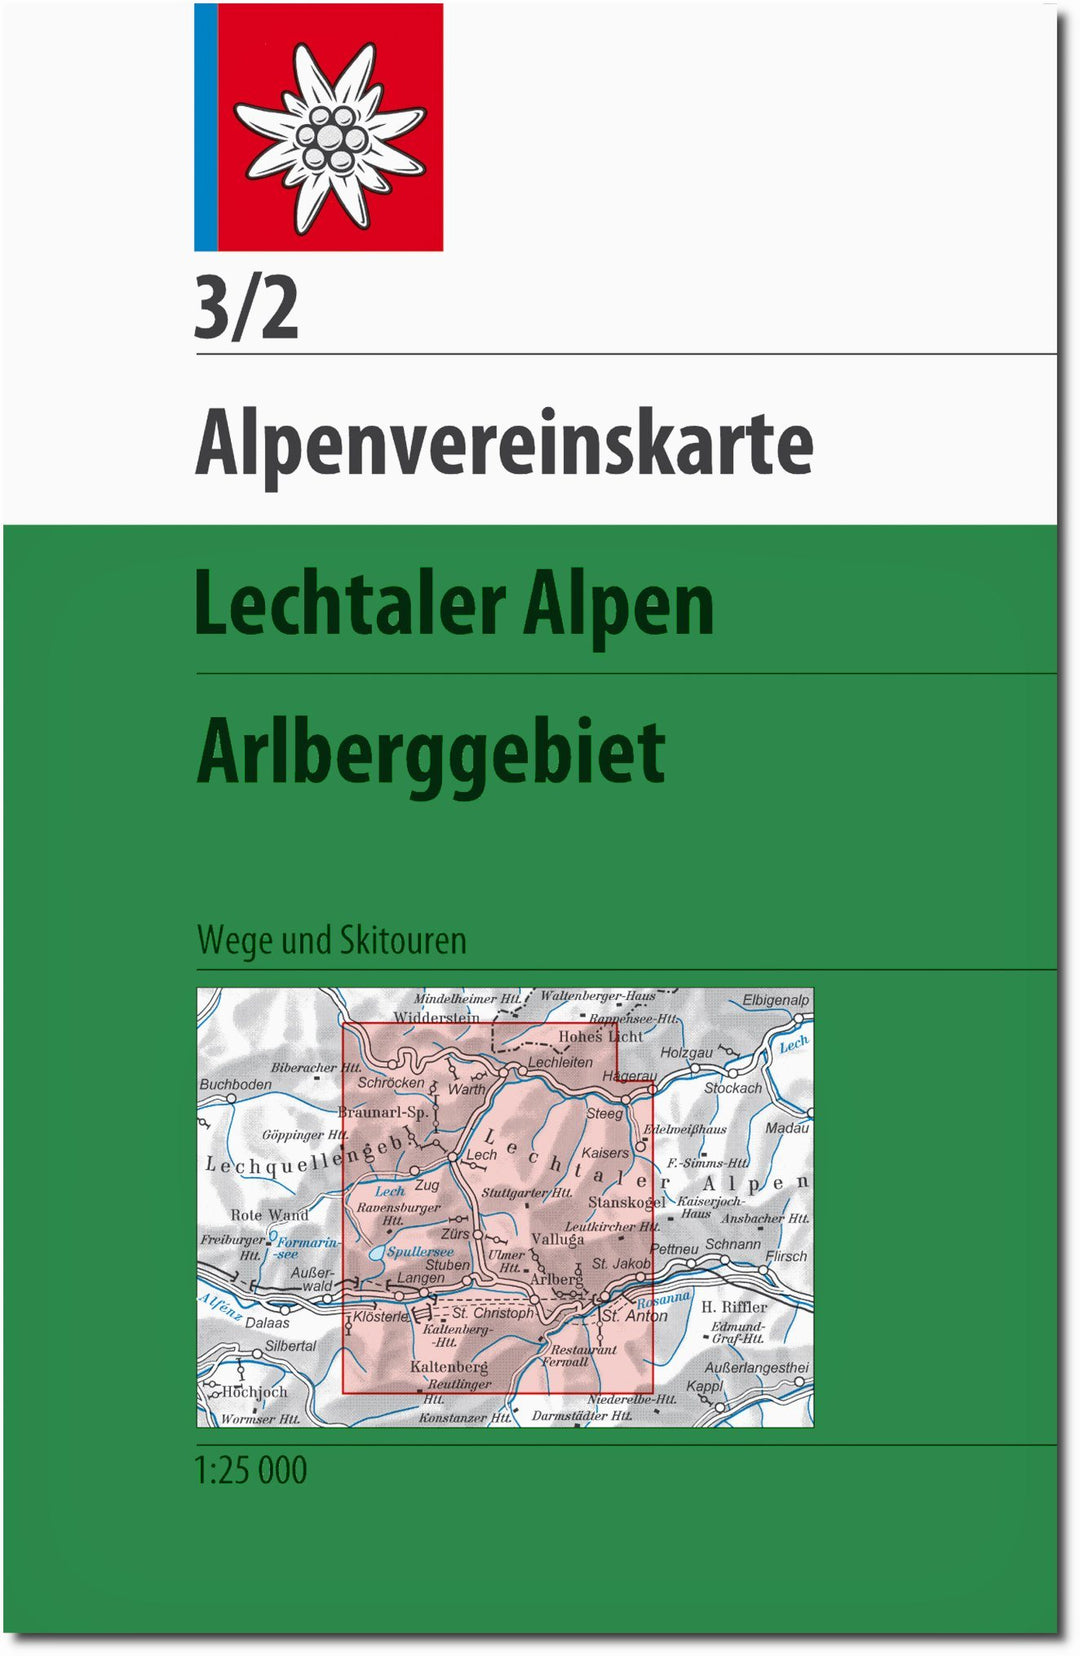 Carte de randonnée n° 3/2 - Alpes de Lechtal - Arlberggebiet (Tyrol autrichien) | Alpenverein carte pliée Alpenverein 